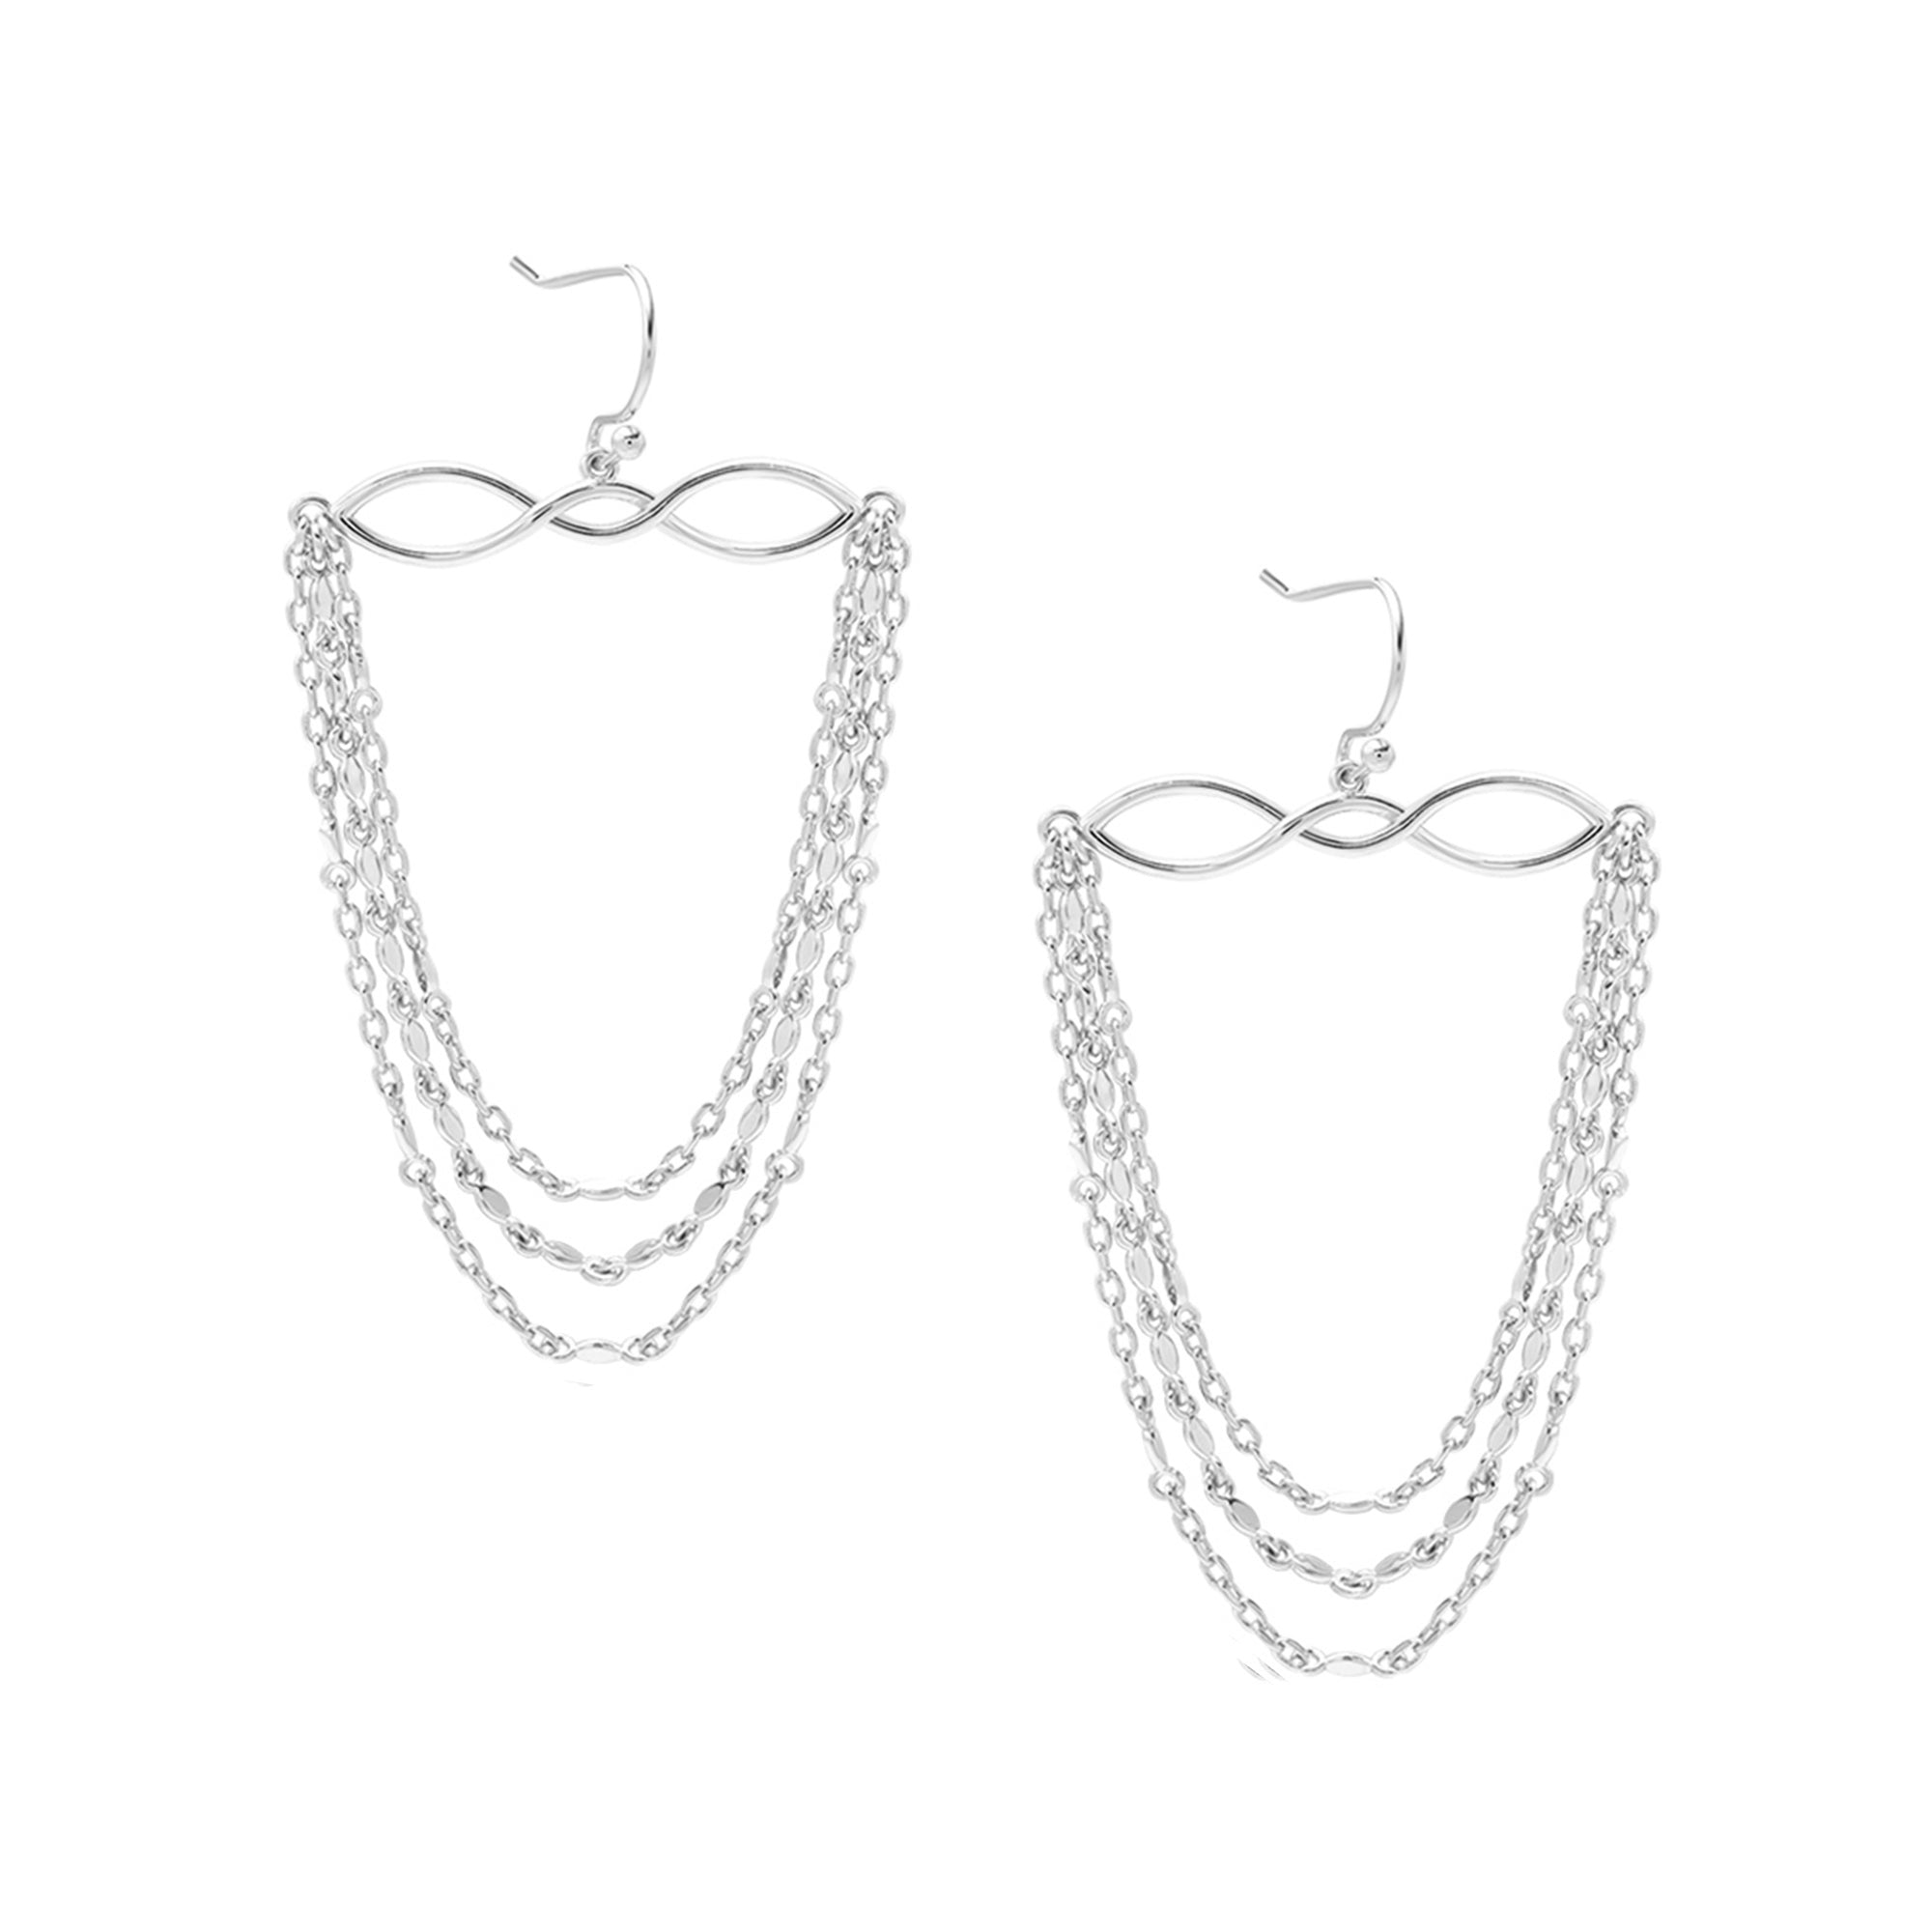 Blossom Earrings in Silver